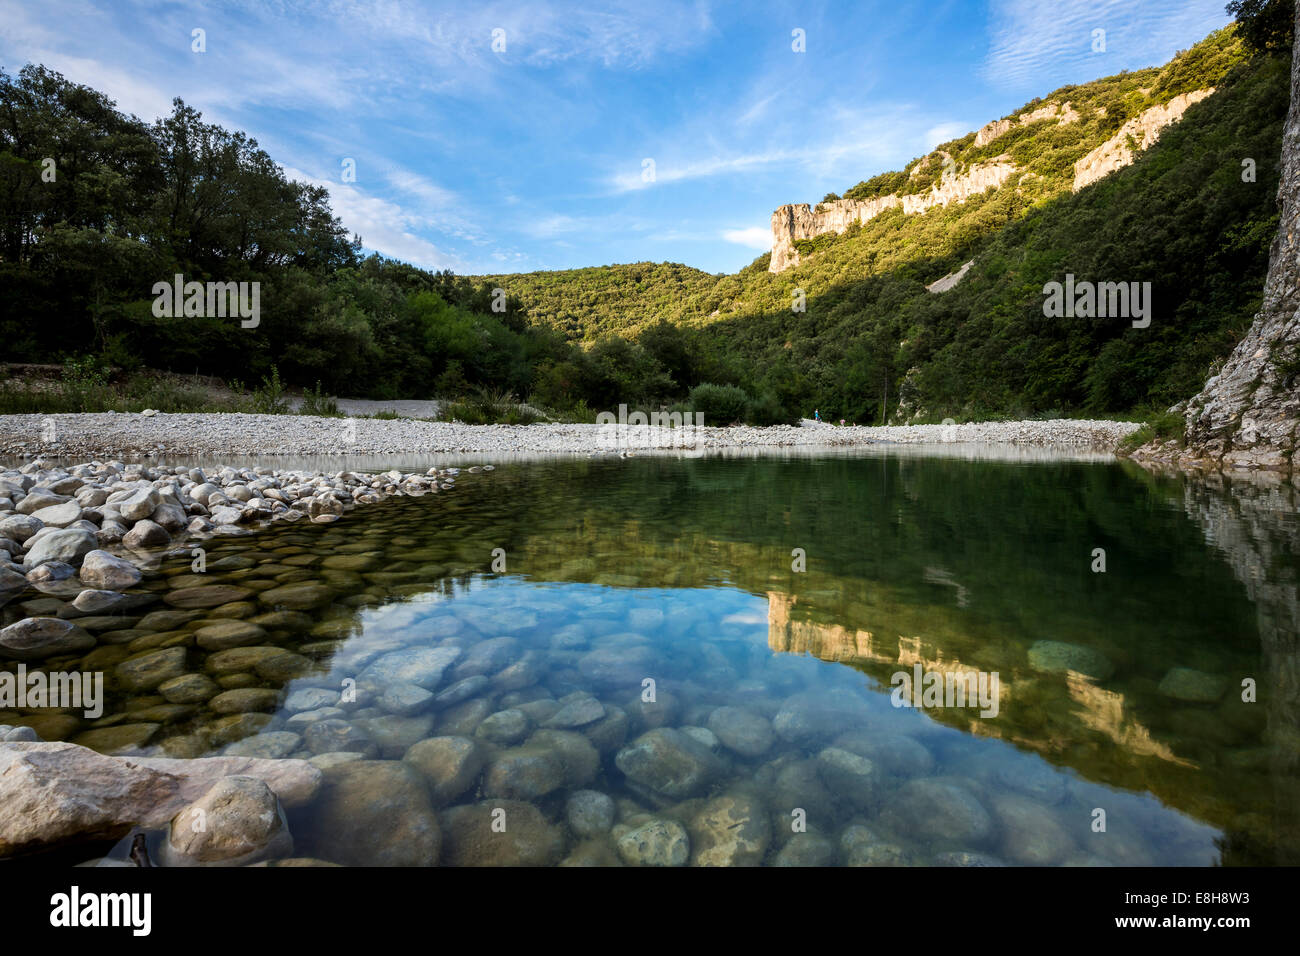 France, Rhone-Alpes, Ibie river at Gorges de l'Ardeche Nature Reserve Stock Photo